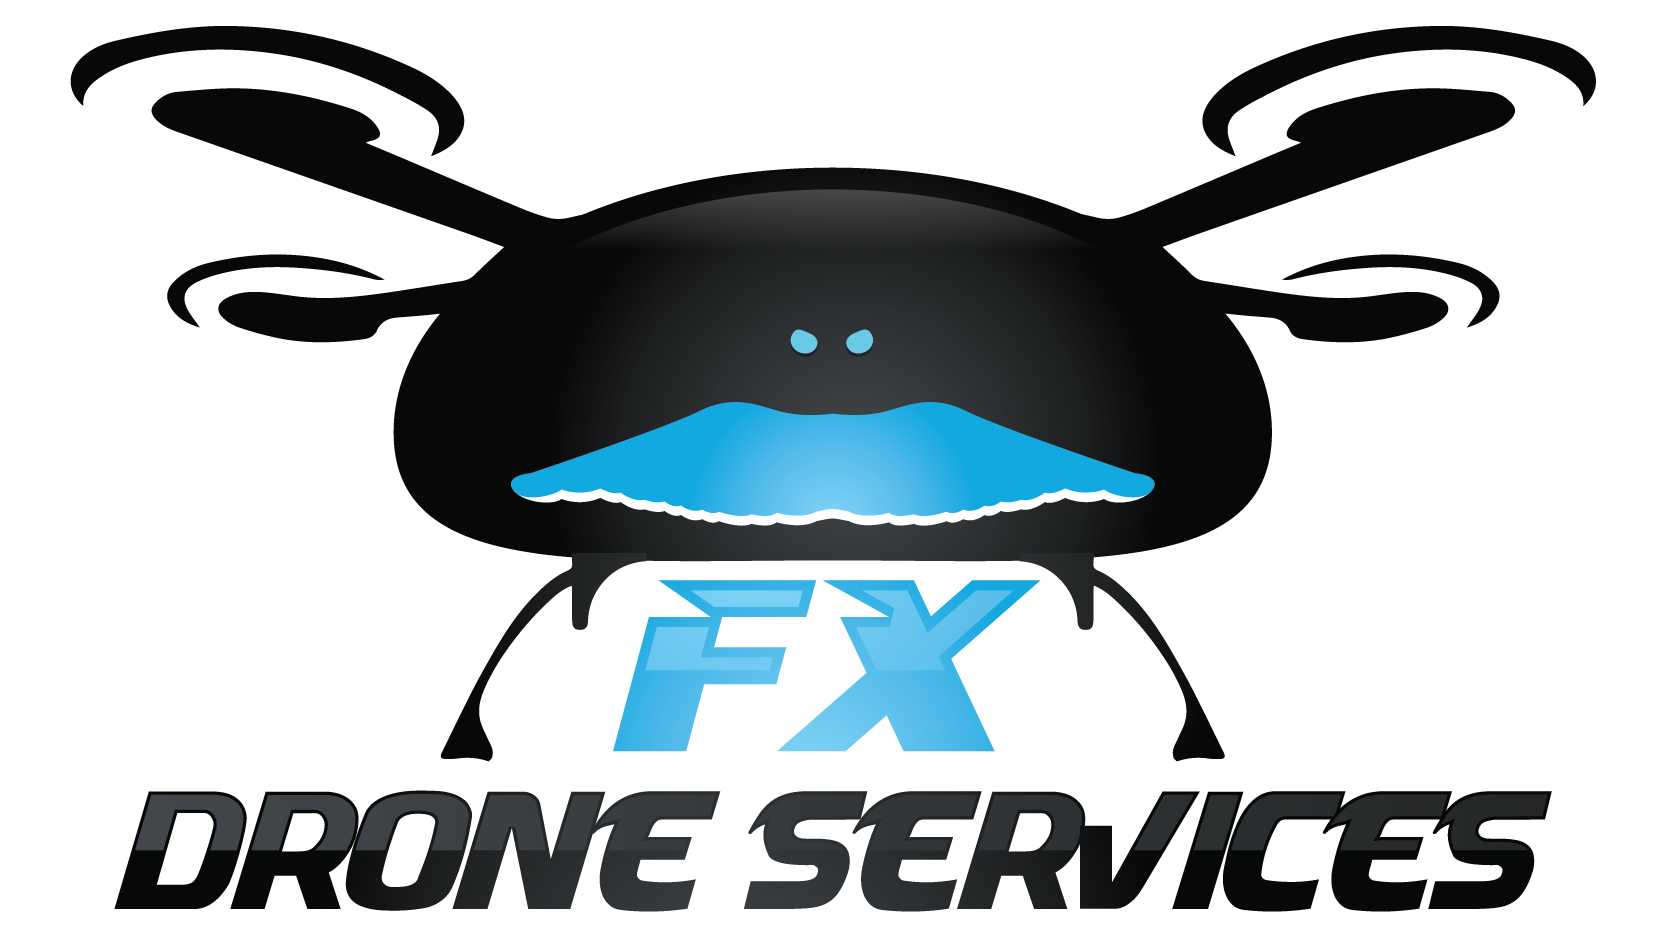 FX Drone Services